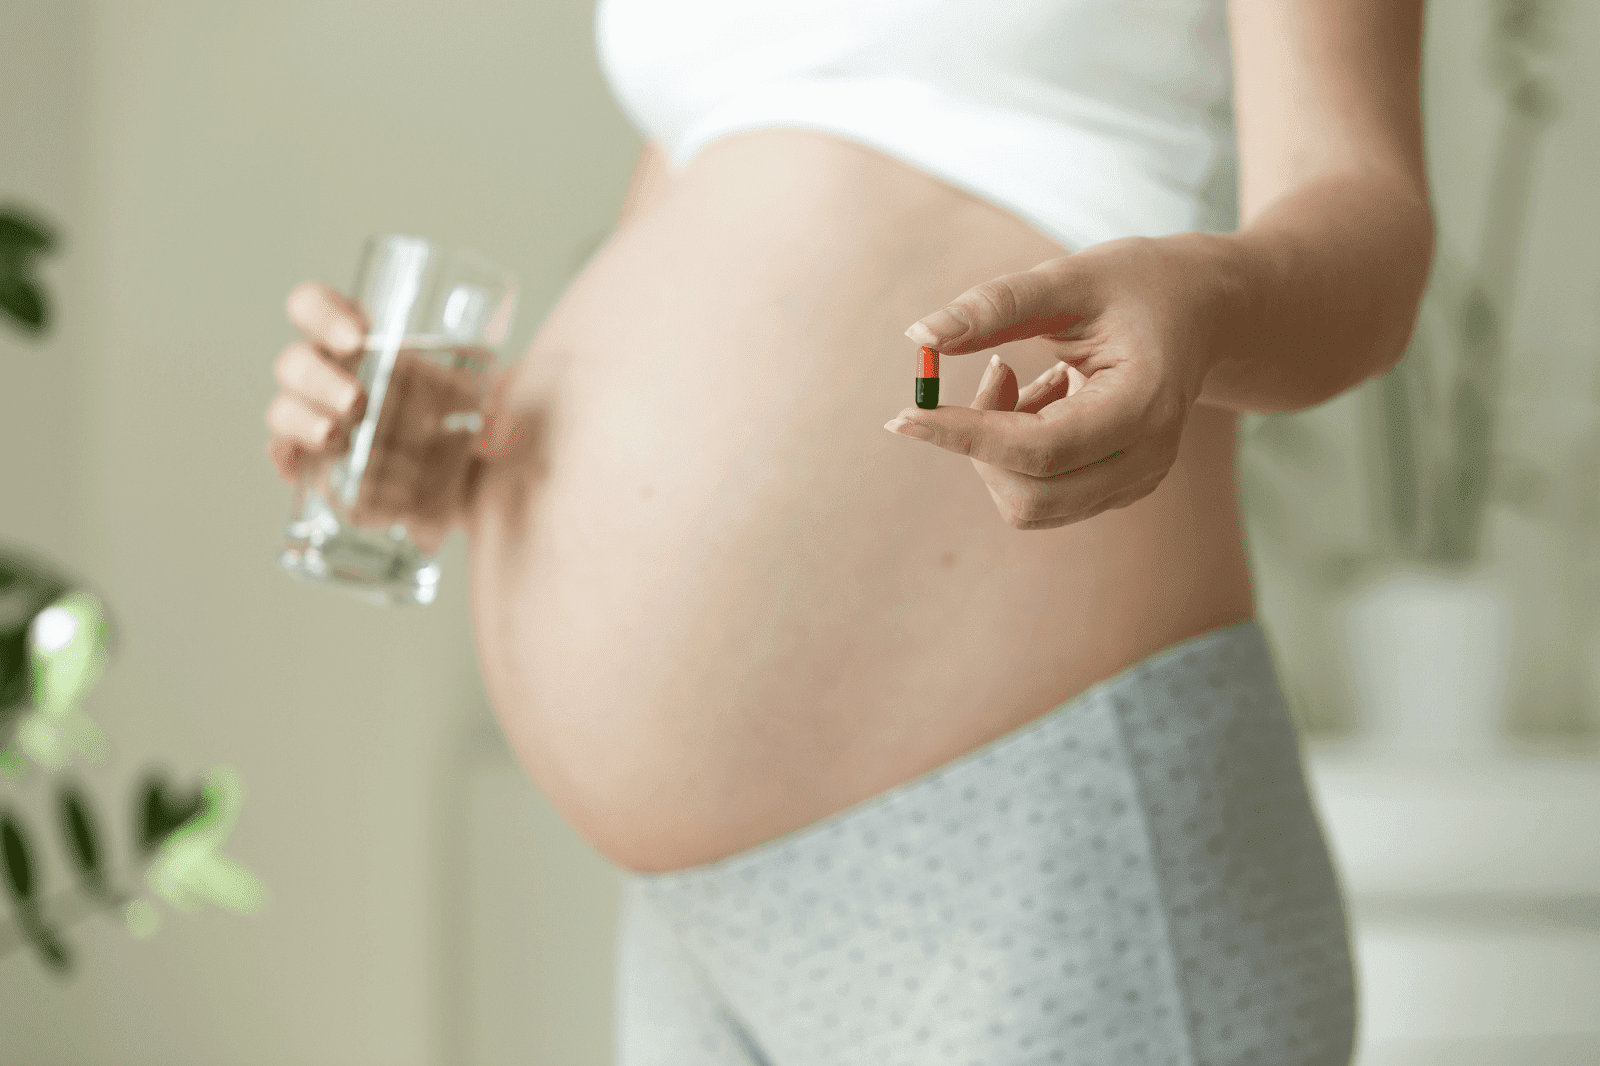 Canxi là một dưỡng chất quan trọng đối với cơ thể con người, đặc biệt đối với phụ nữ trong thời kỳ mang thai.